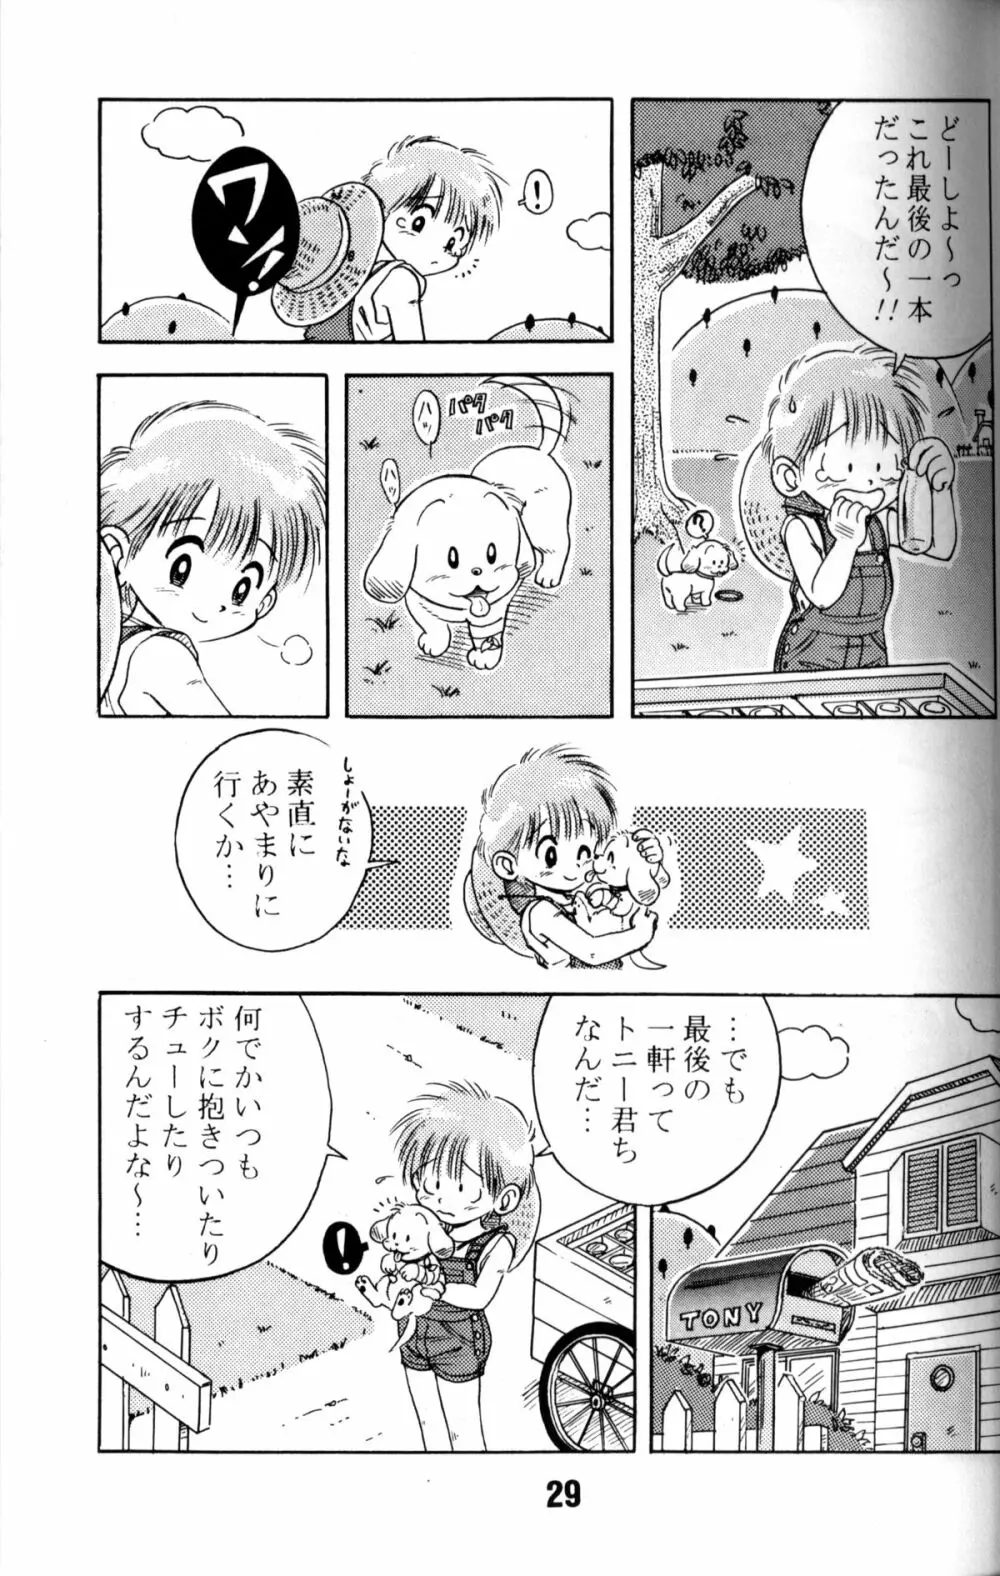 Anthology - Nekketsu Project - Volume 1 'Shounen Banana Milk' Page.28